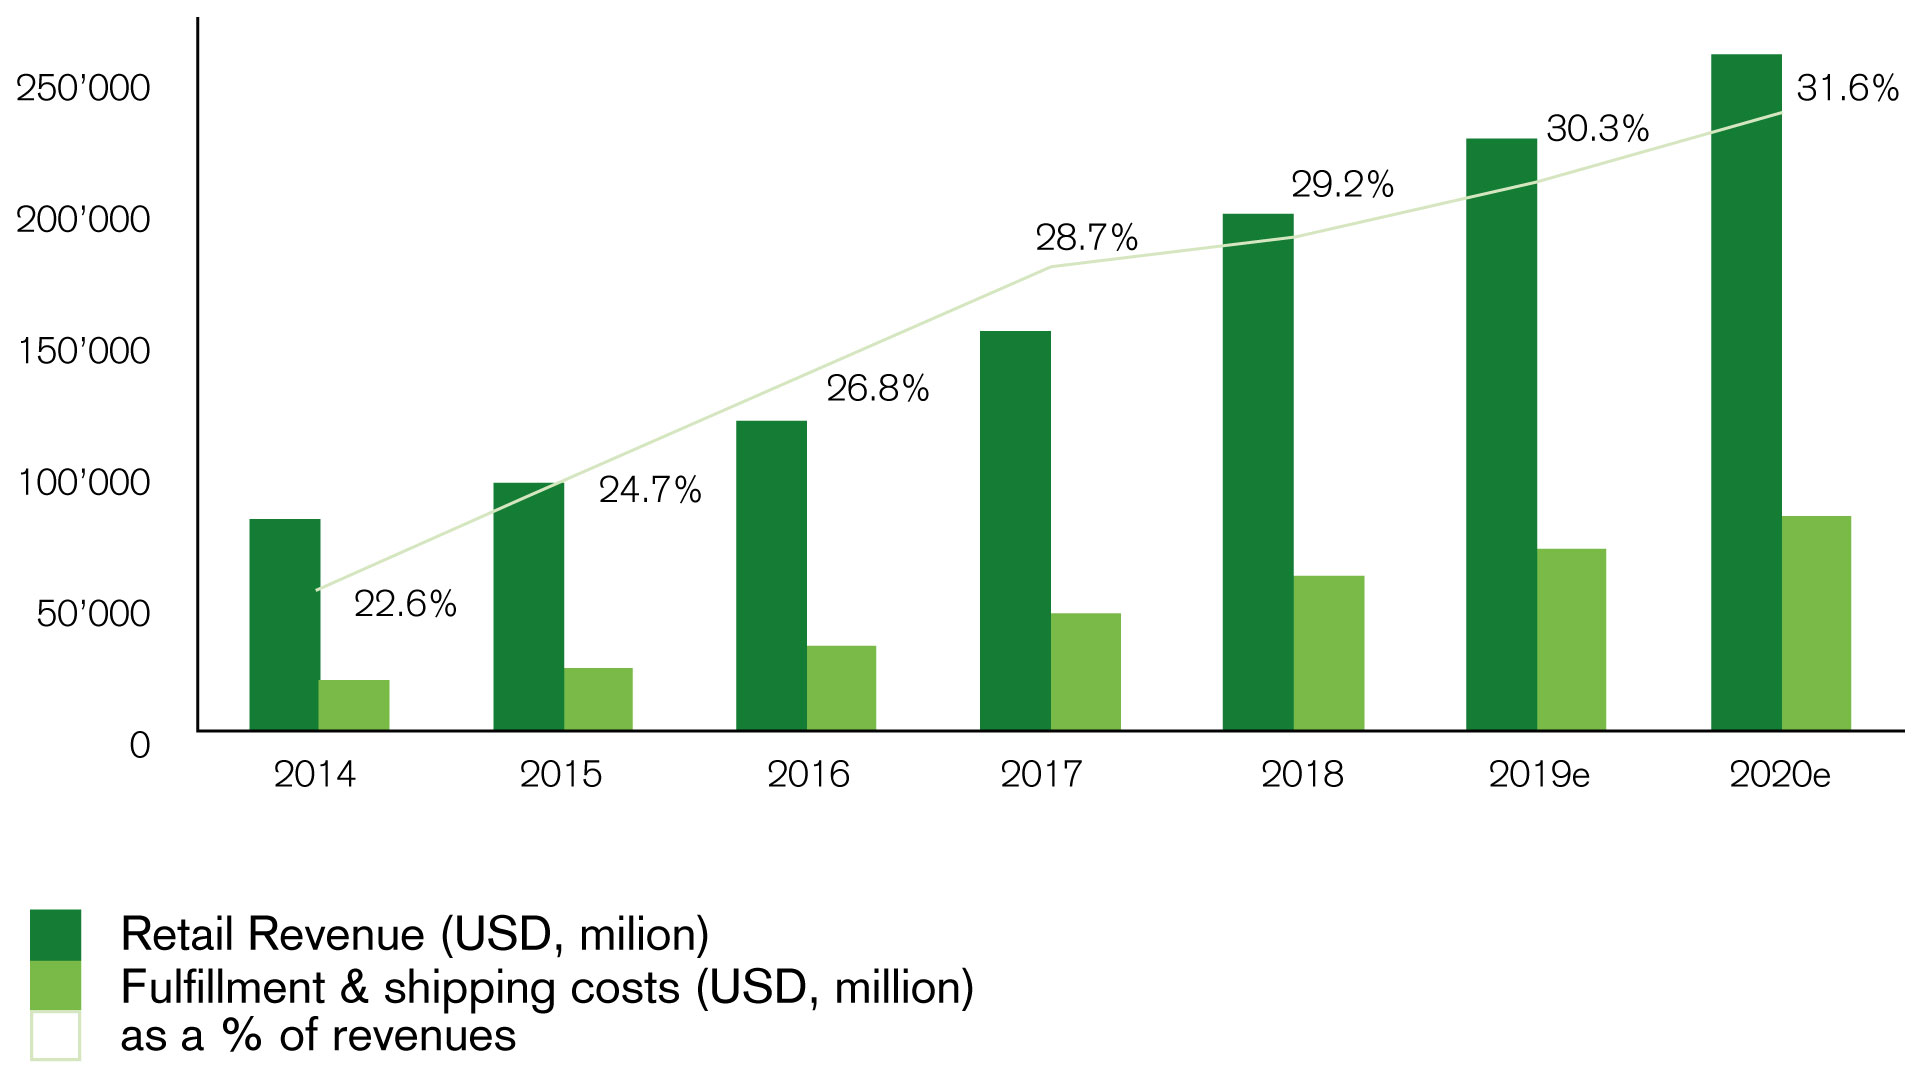 Grafik 1b. Steigende Tendenz der Vertriebskosten bei Amazon